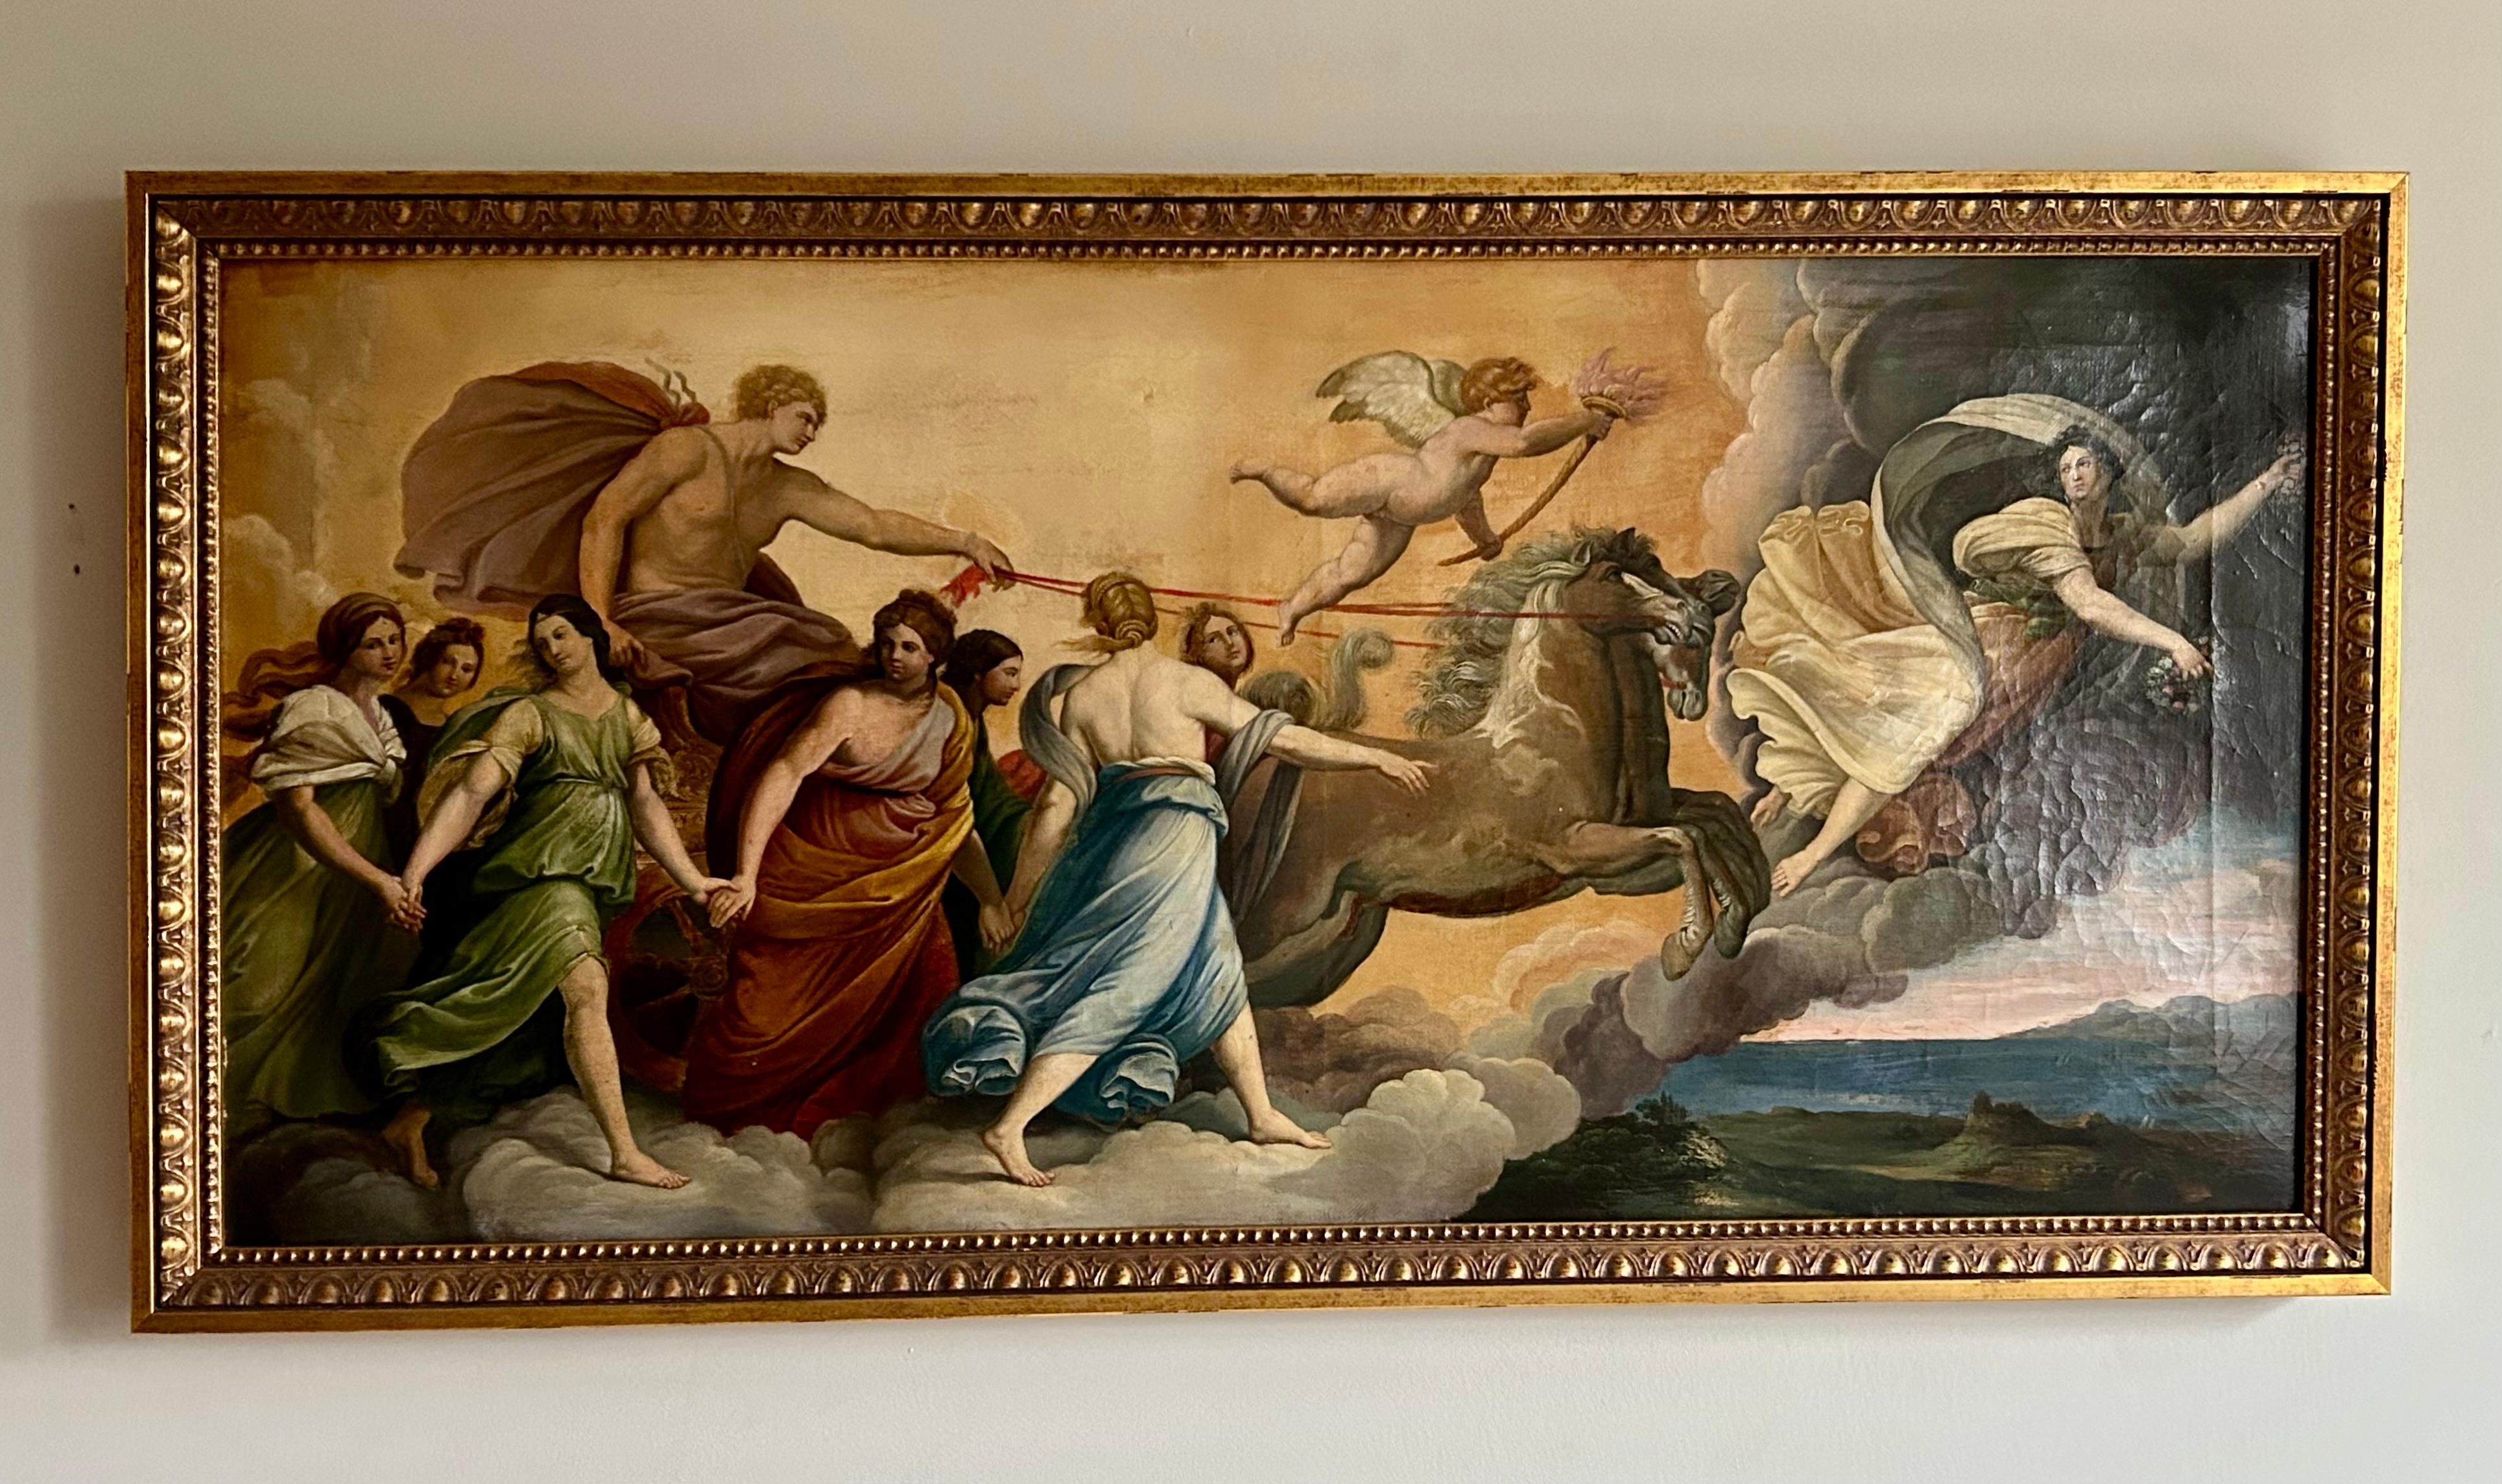 Maravillosa copia del siglo XIX de la obra maestra de Guido Reni, La Aurora,  un gran fresco barroco pintado en el techo  en 1614 para el Casino, o casa-jardín, adyacente al palacio Pallavicini-Rospigliosi, en Roma. La obra se considera la obra